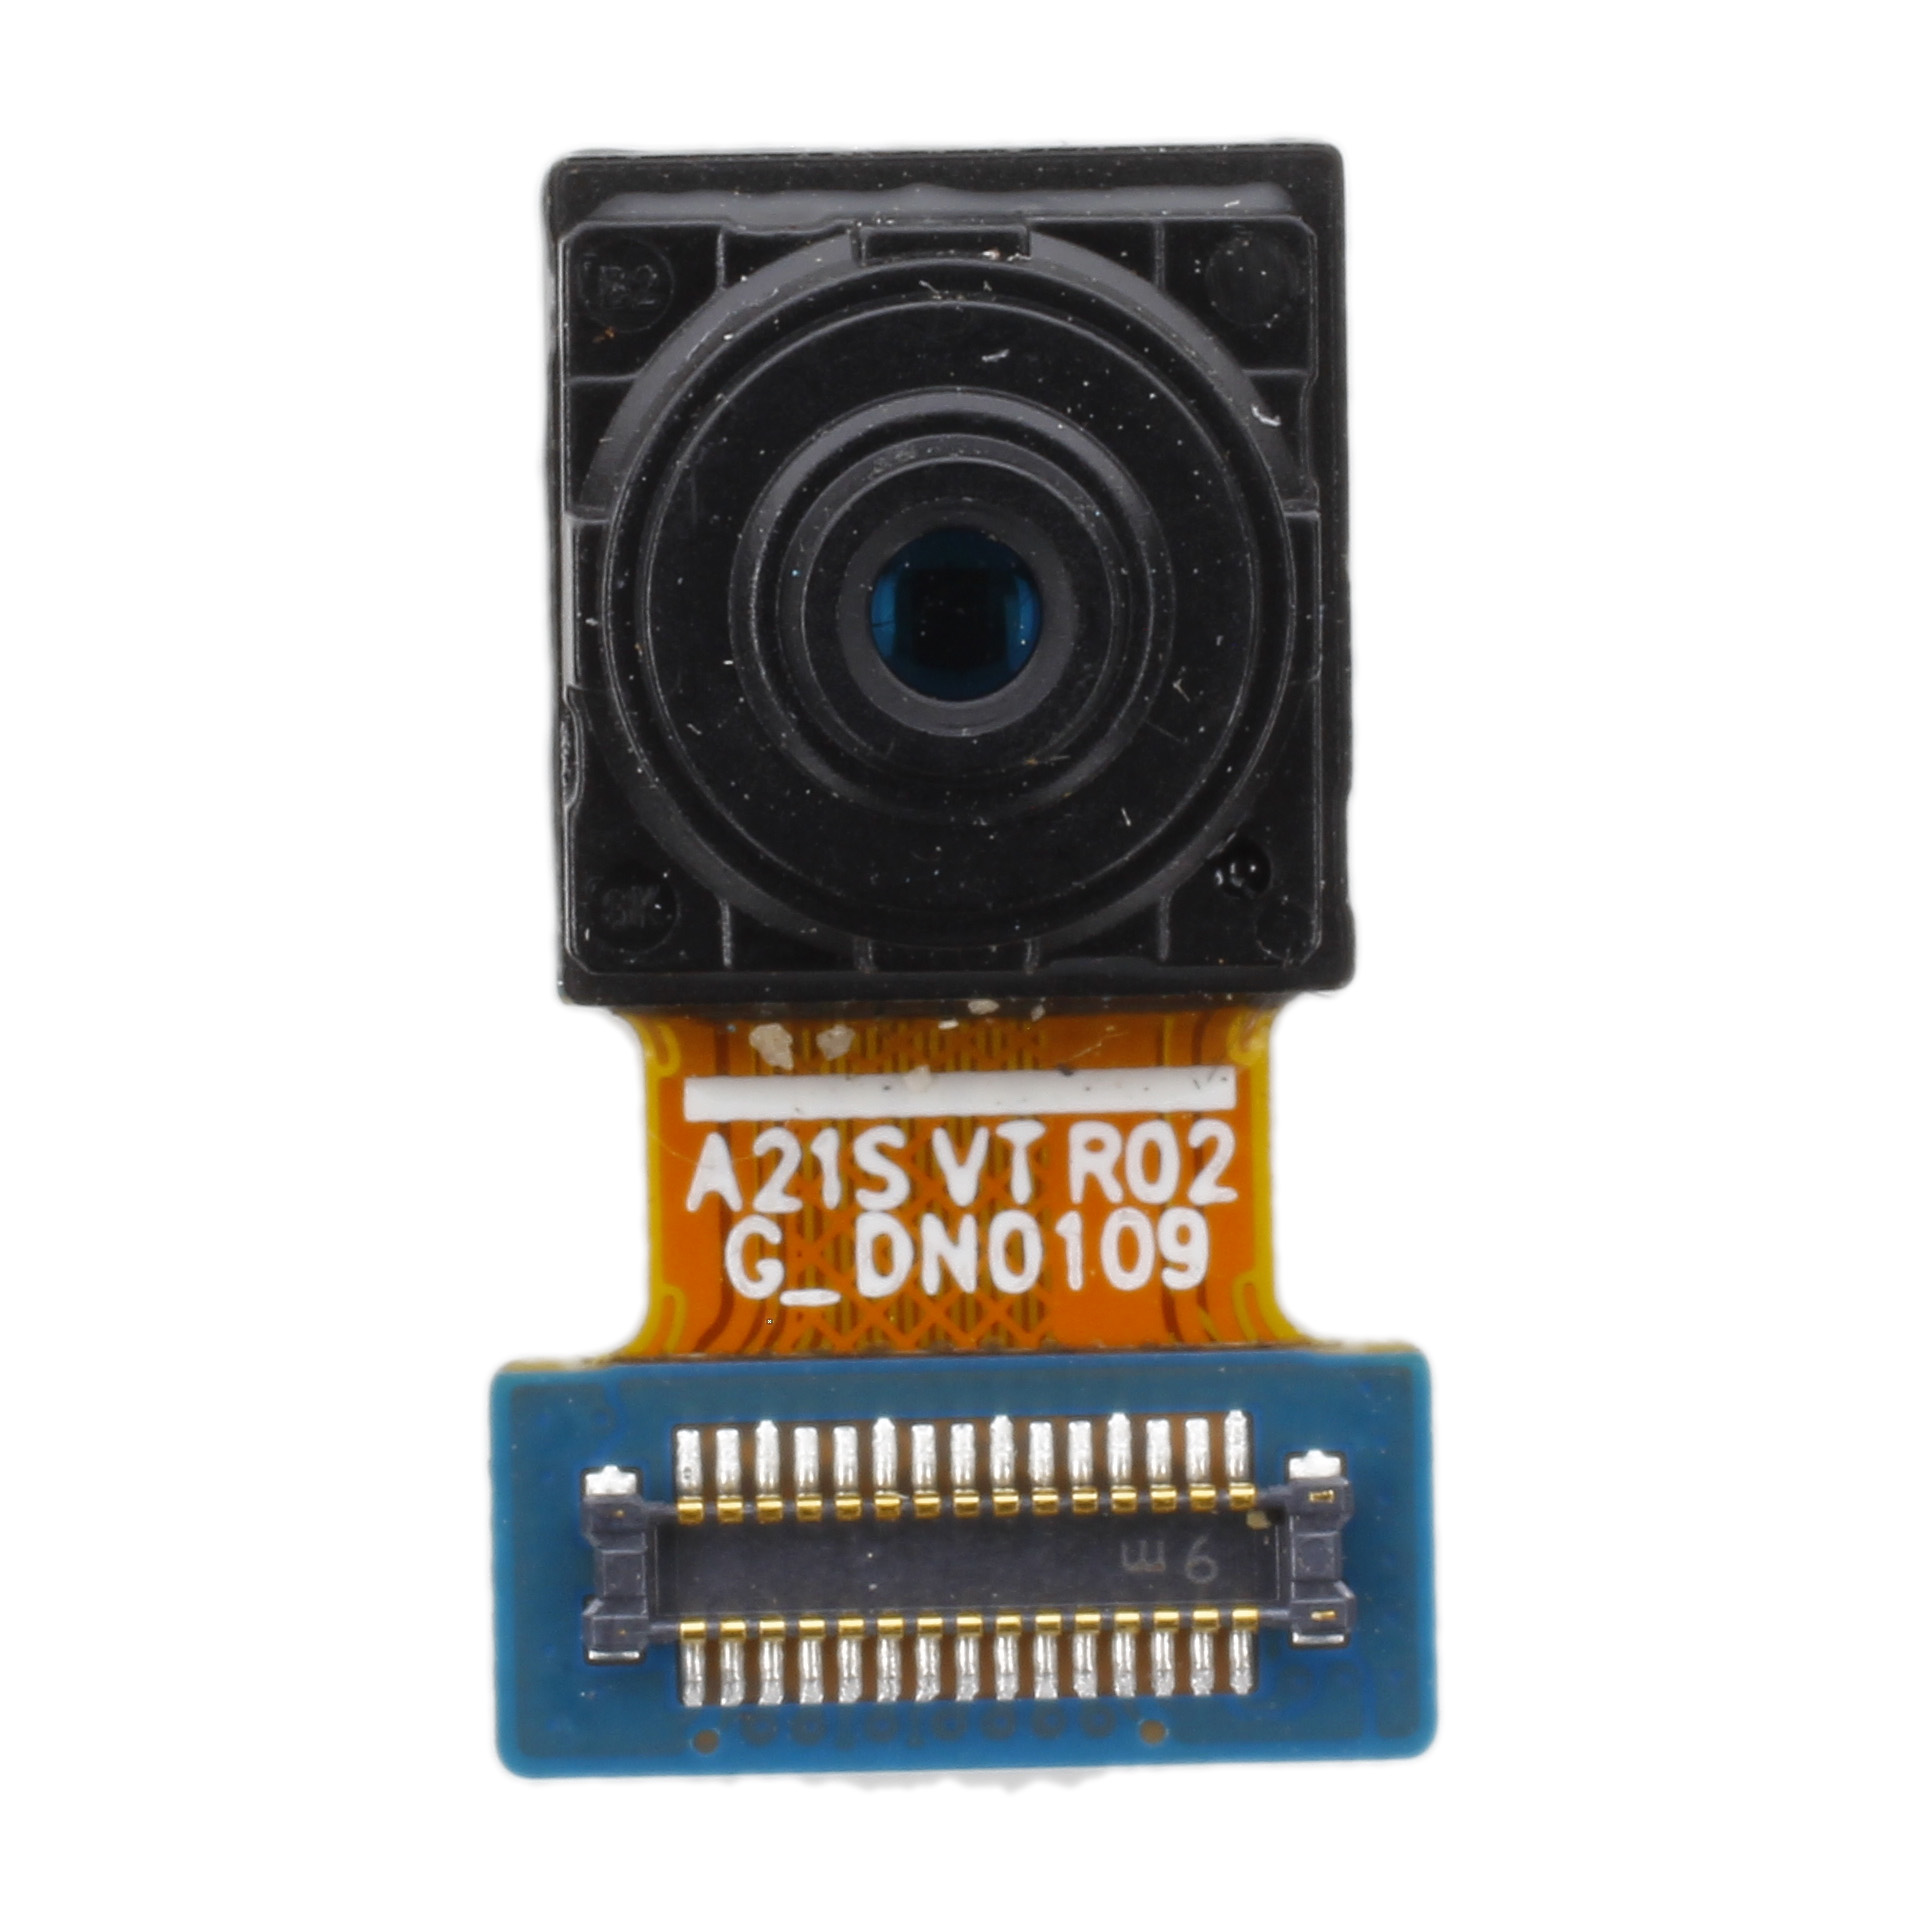 Frontkamera kompatibel mit Samsung Galaxy A21s (A217F)